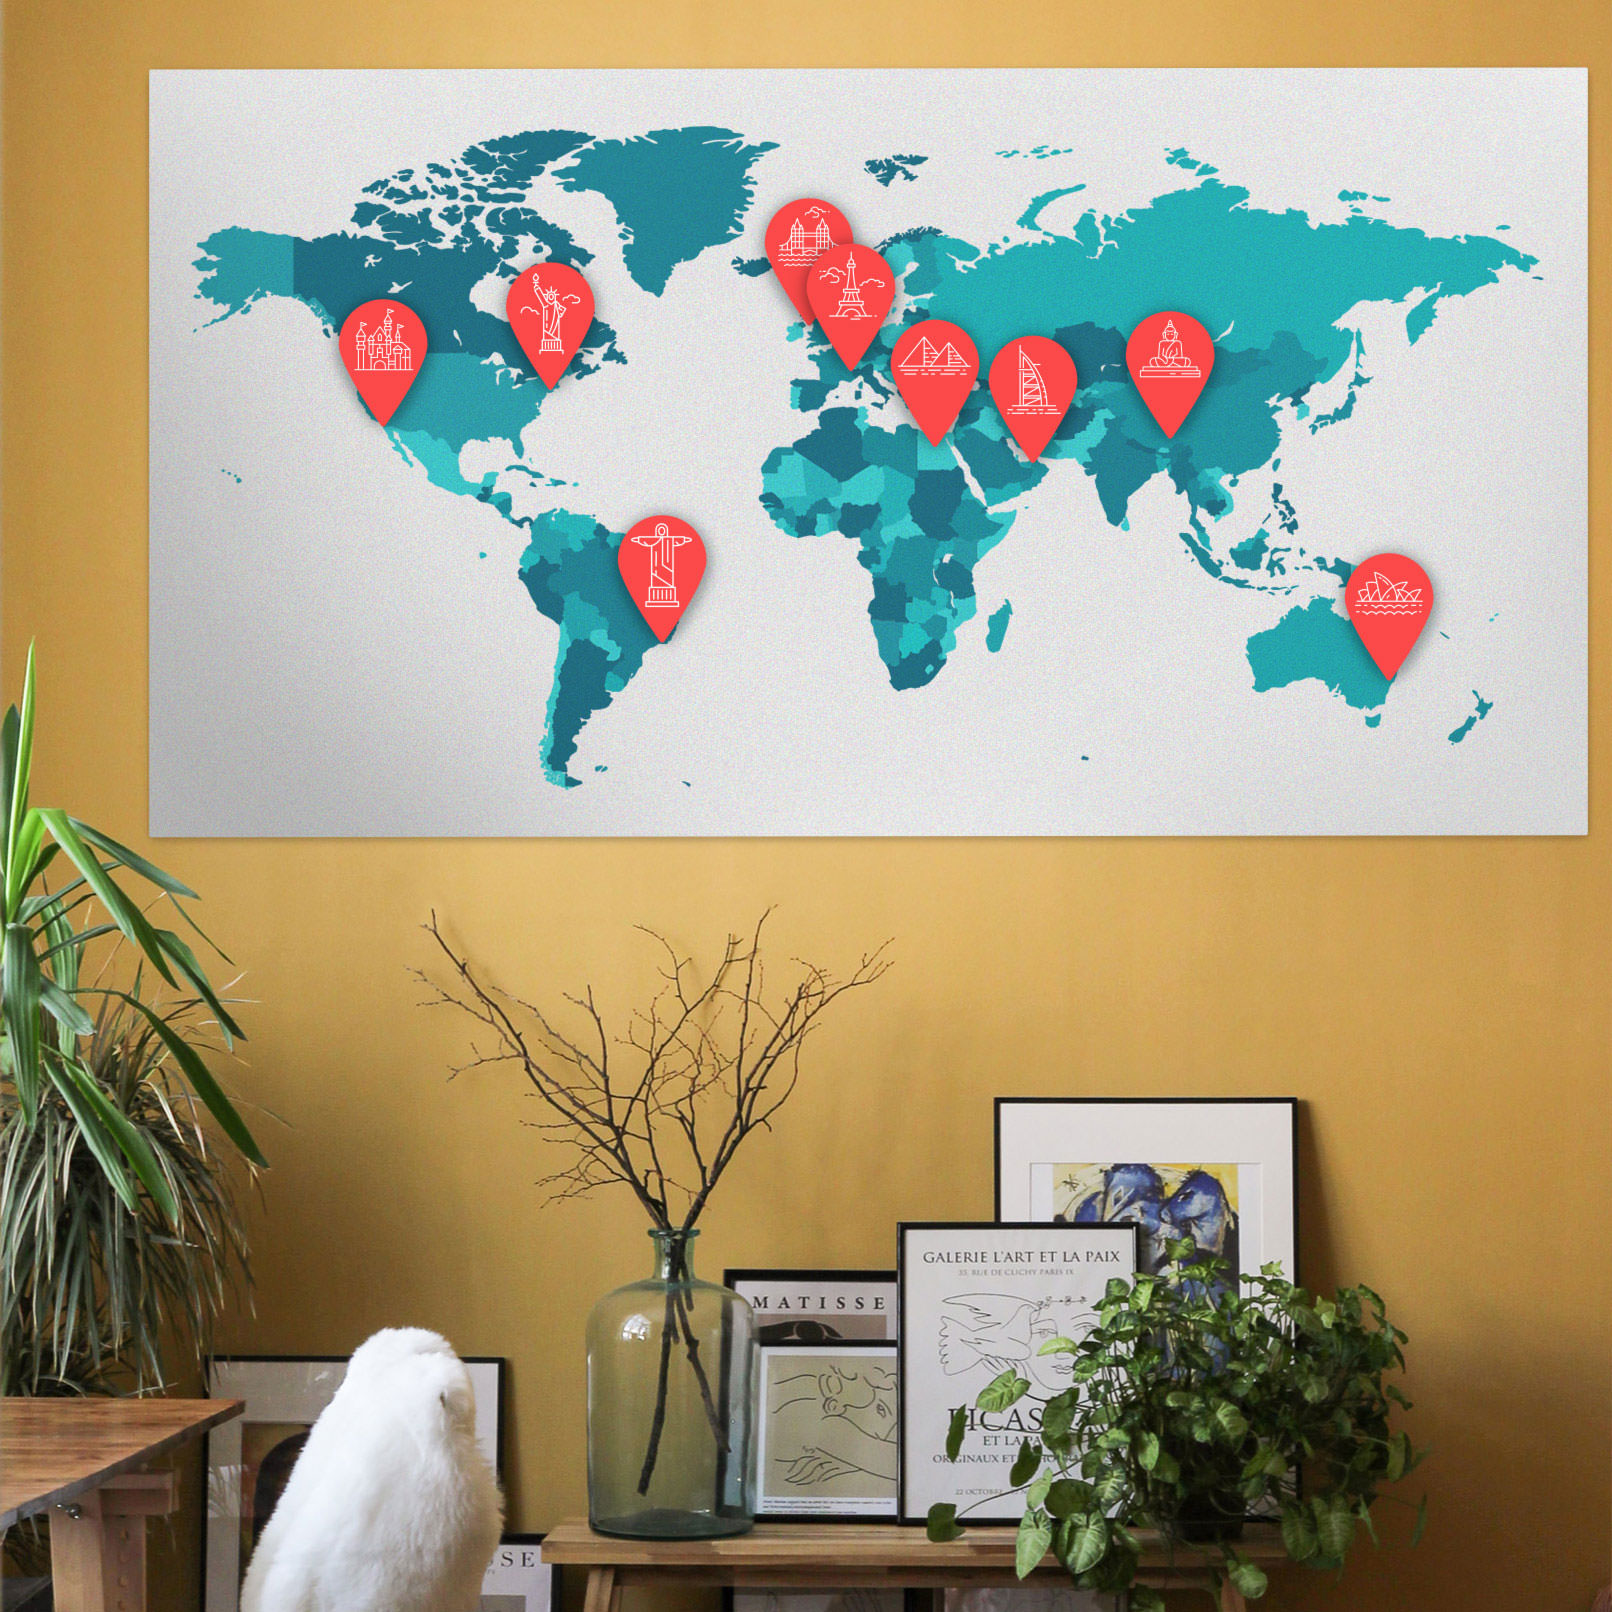 Icons zu den Themen Reisen und Urlaub auf einer Weltkarte